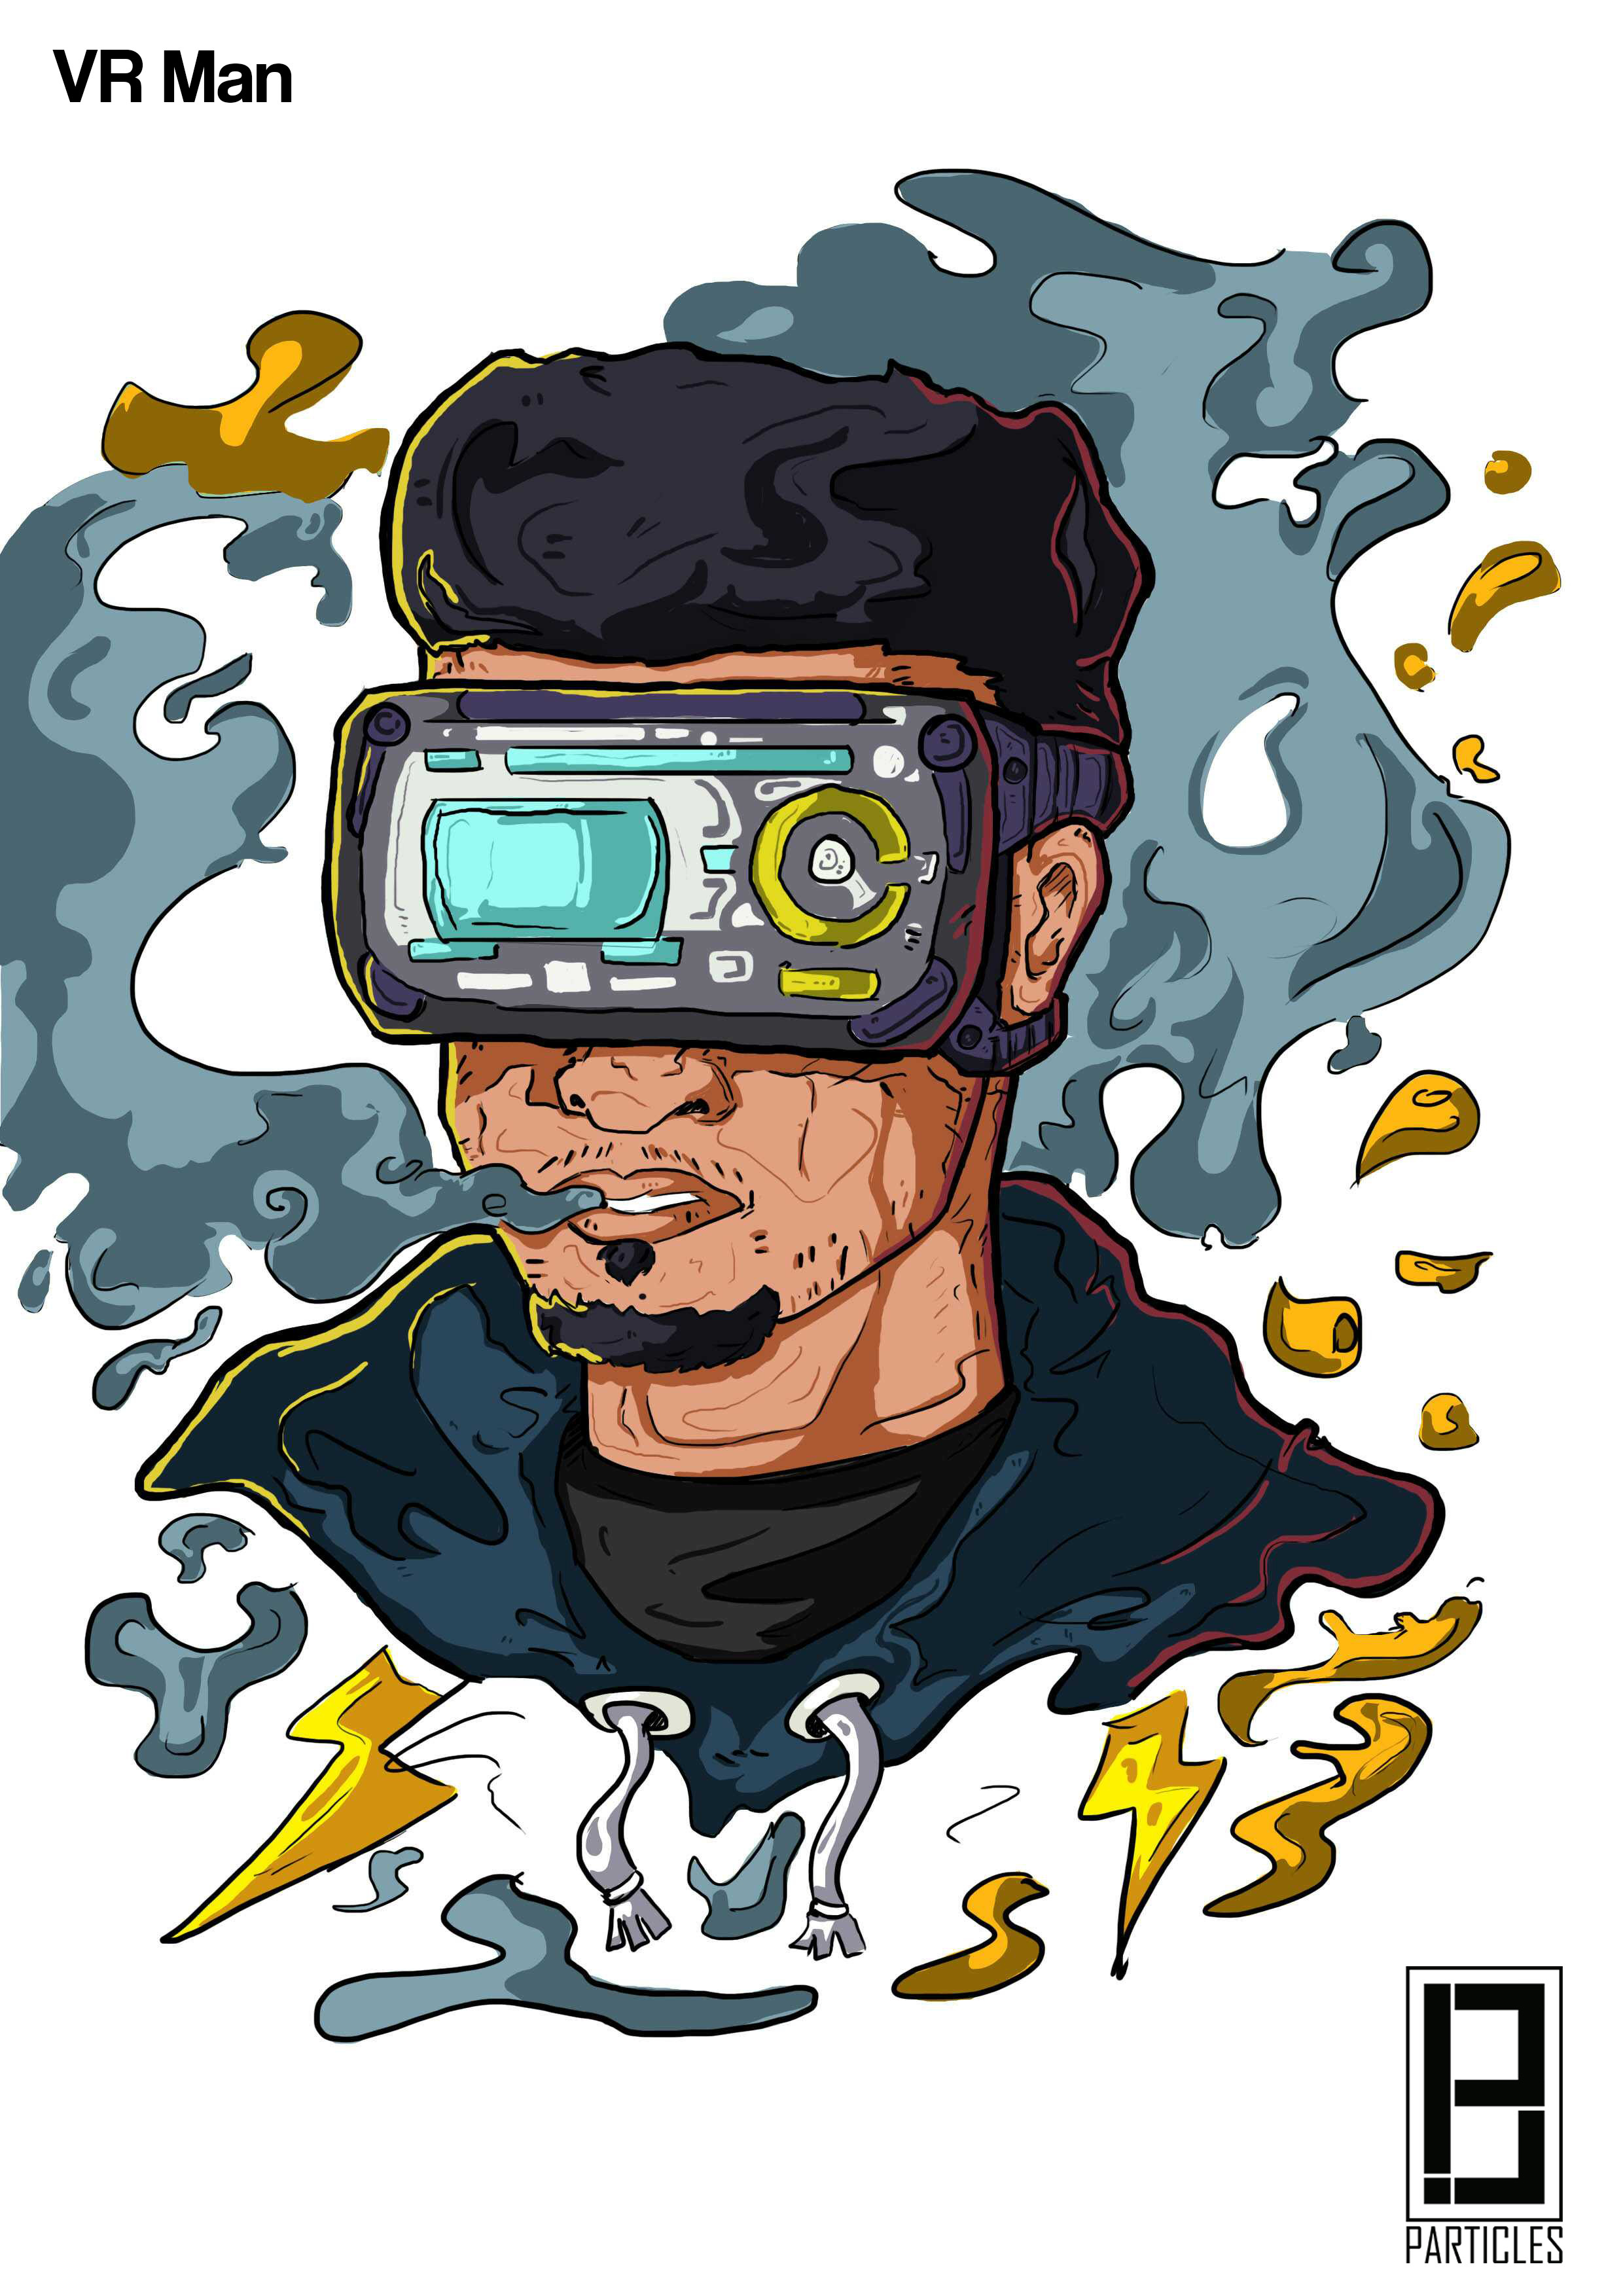 VR Man